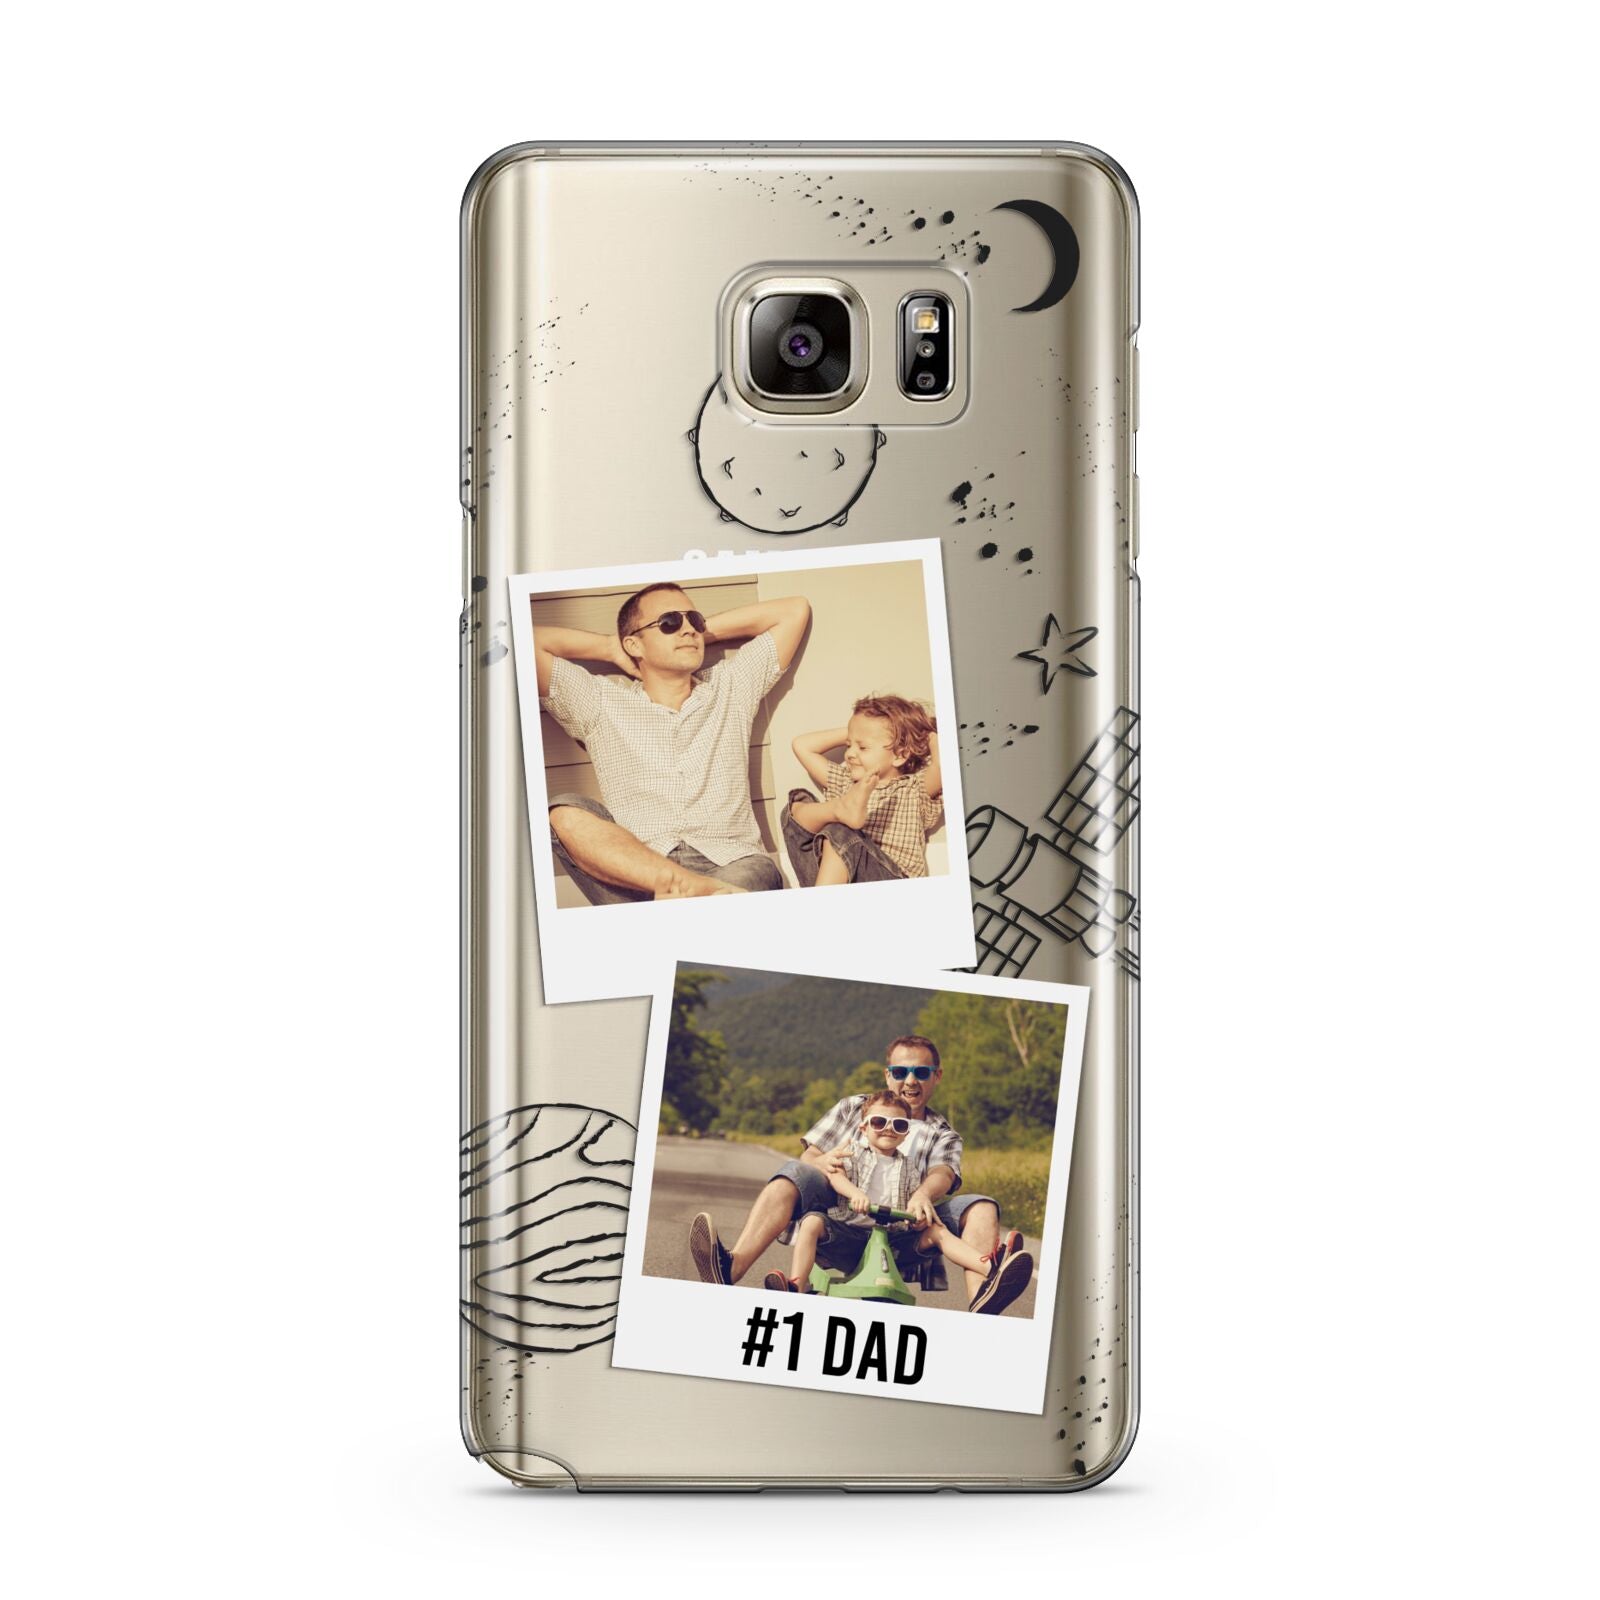 Personalised Dad Photos Samsung Galaxy Note 5 Case